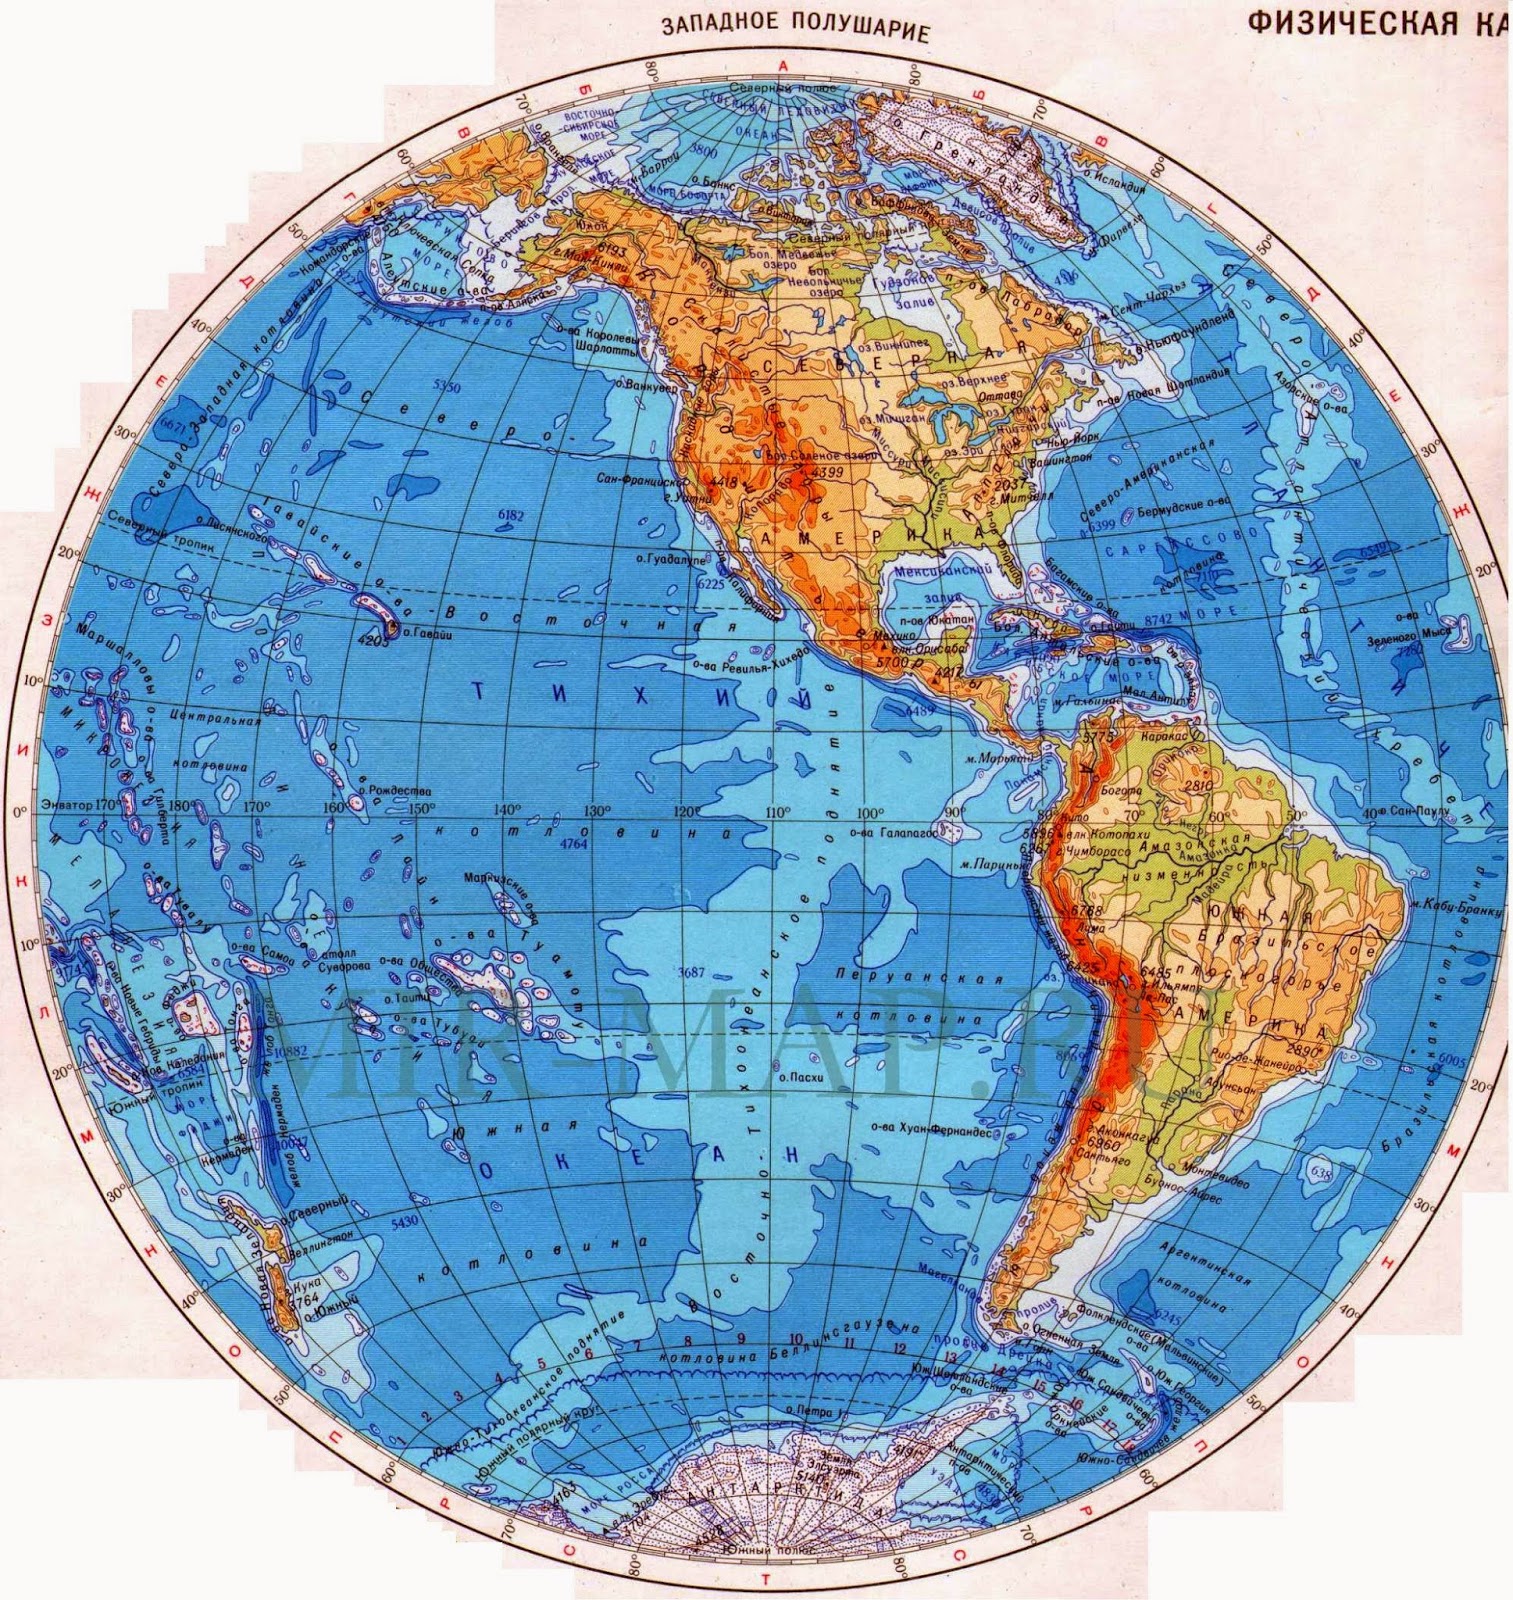 Море южного полушария. Физическая карта Западного полушария. Карта полушарий Западное полушарие. Карта Западного полушария земли. Физическая карта полушарий Западное полушарие Восточное полушарие.